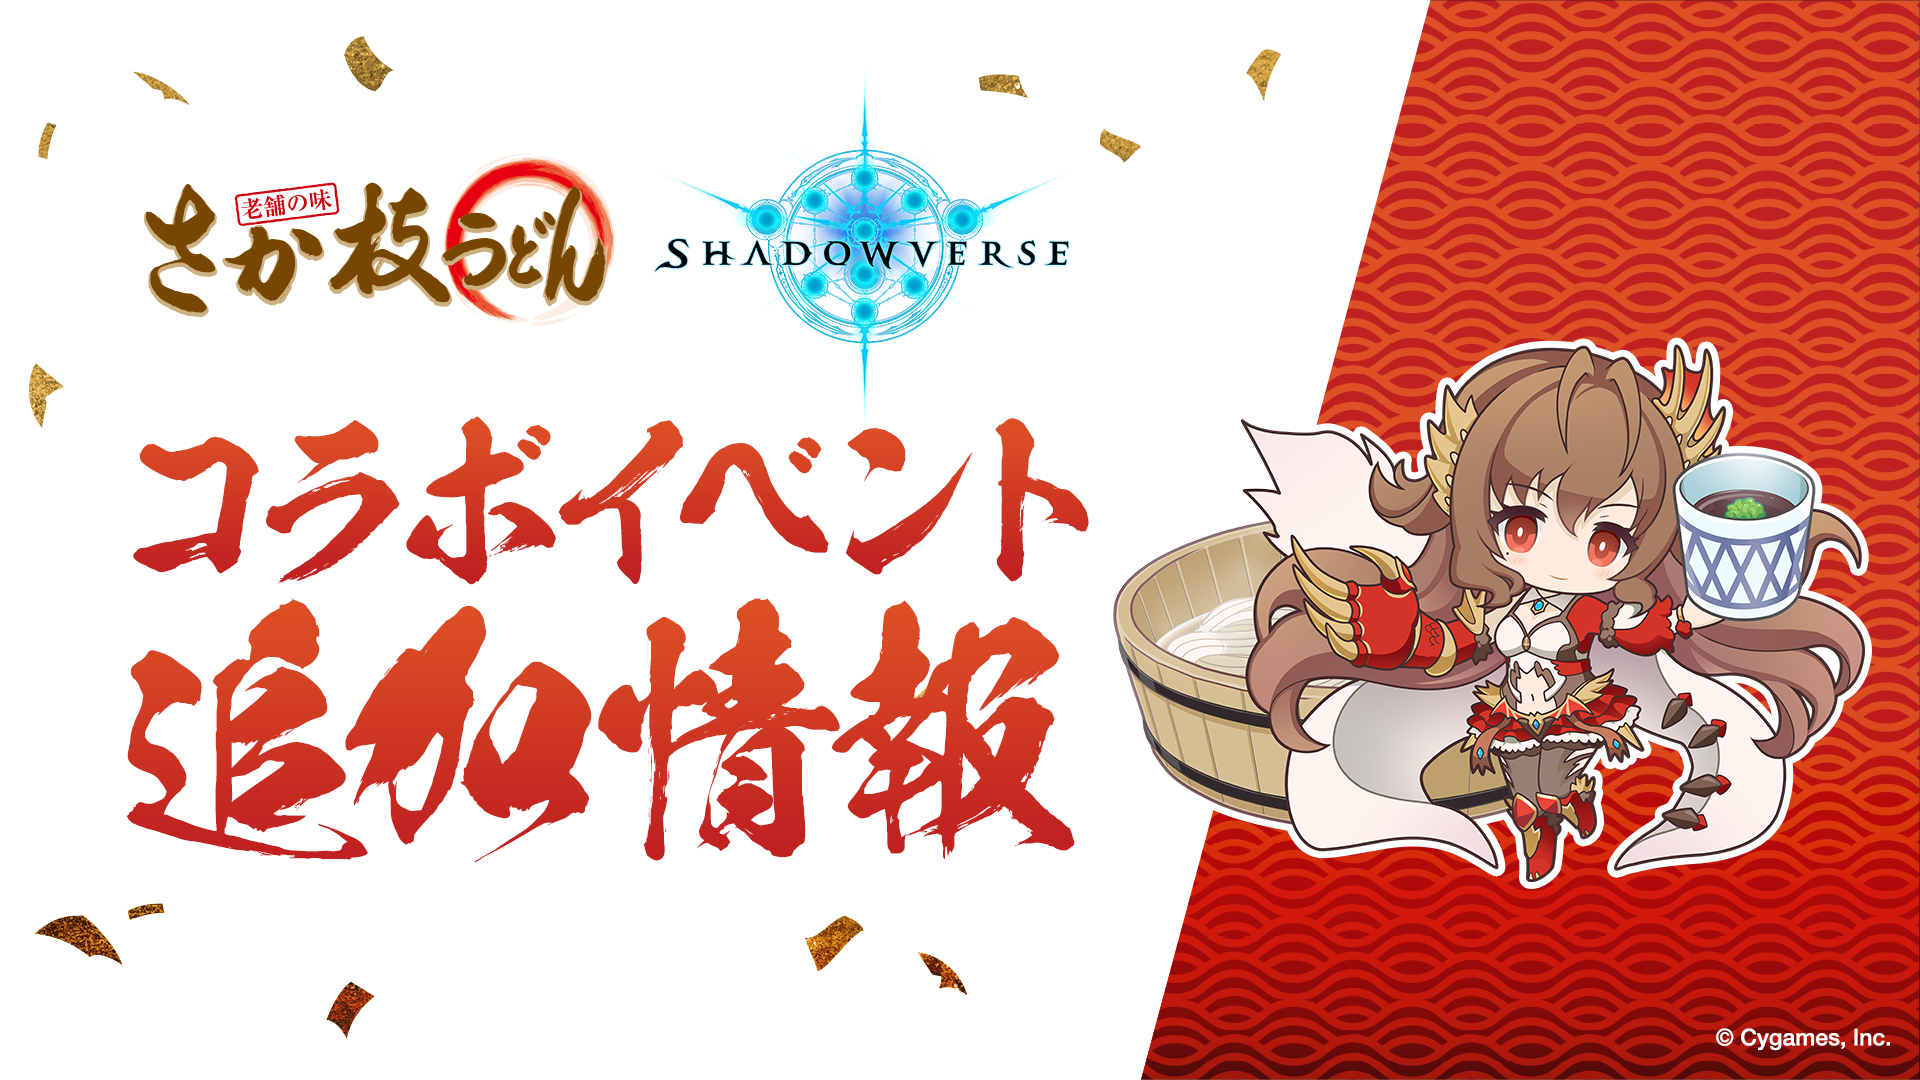 イベント | Shadowverse【シャドウバース】公式サイト | Cygames